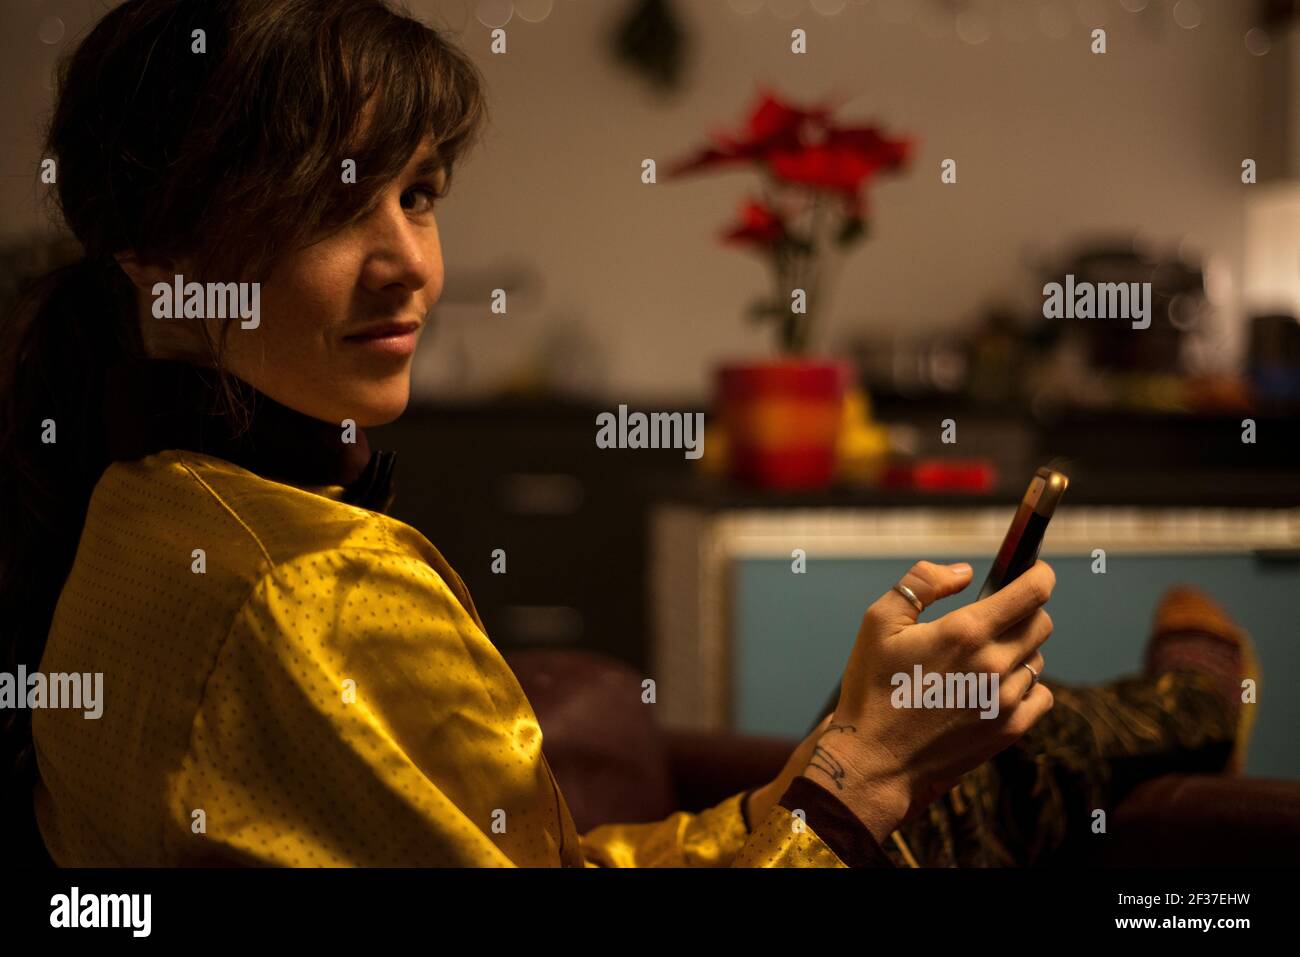 Sommersprossen Frau schaut zur Kamera, während sie am Telefon tippt Zuhause bei Nacht Stockfoto